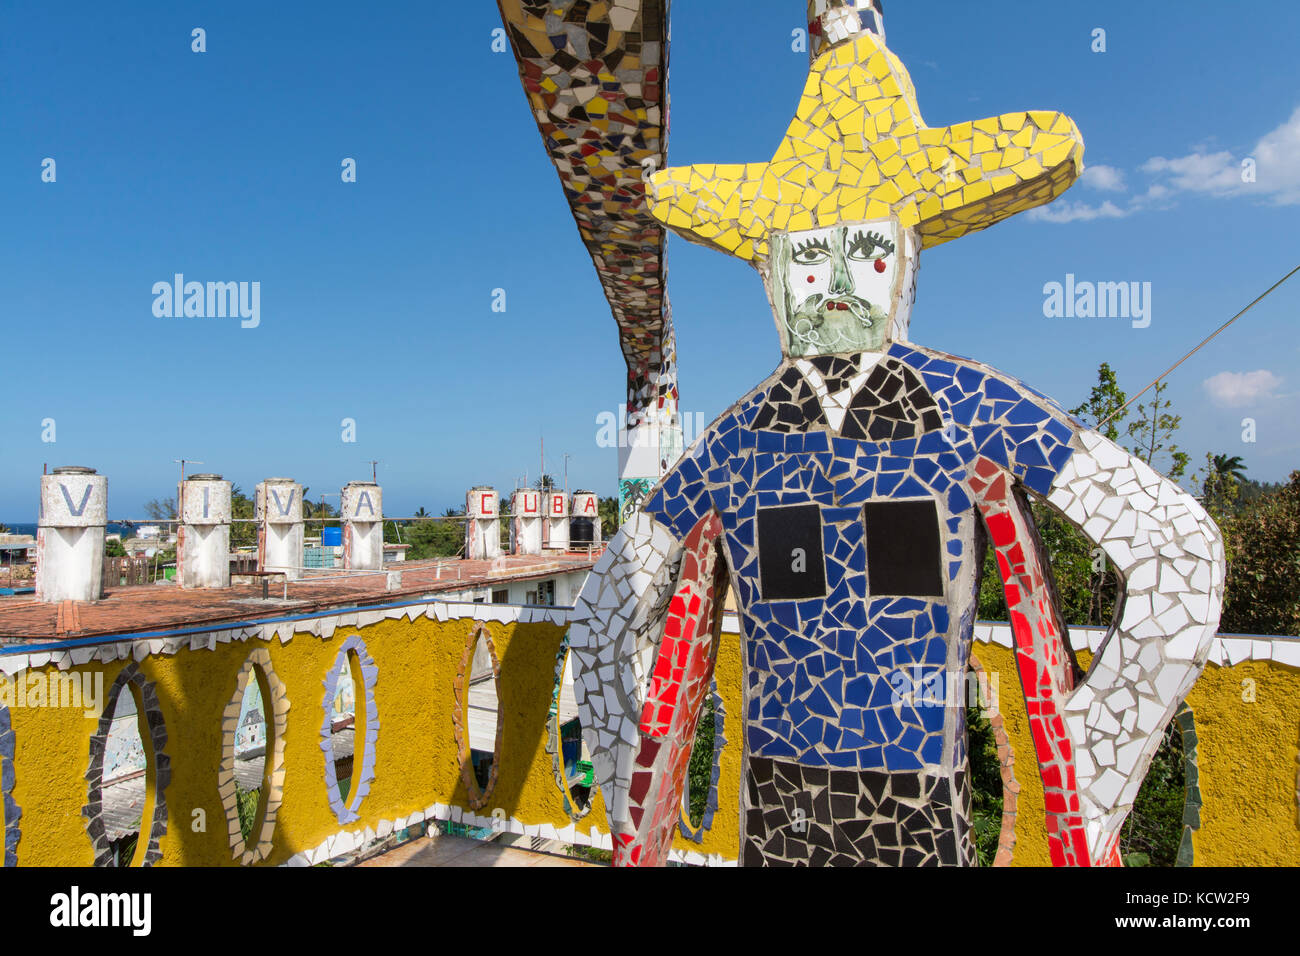 Viva Cuba, Fusterlandia, Jaimanitas, Havanna, Kuba. Eine Schaffung von Jose Fuster, ein kubanischer Künstler, Maler und Bildhauer, die das Projekt ist sein Haus und Häuser seines Nächsten zu renovieren Stockfoto